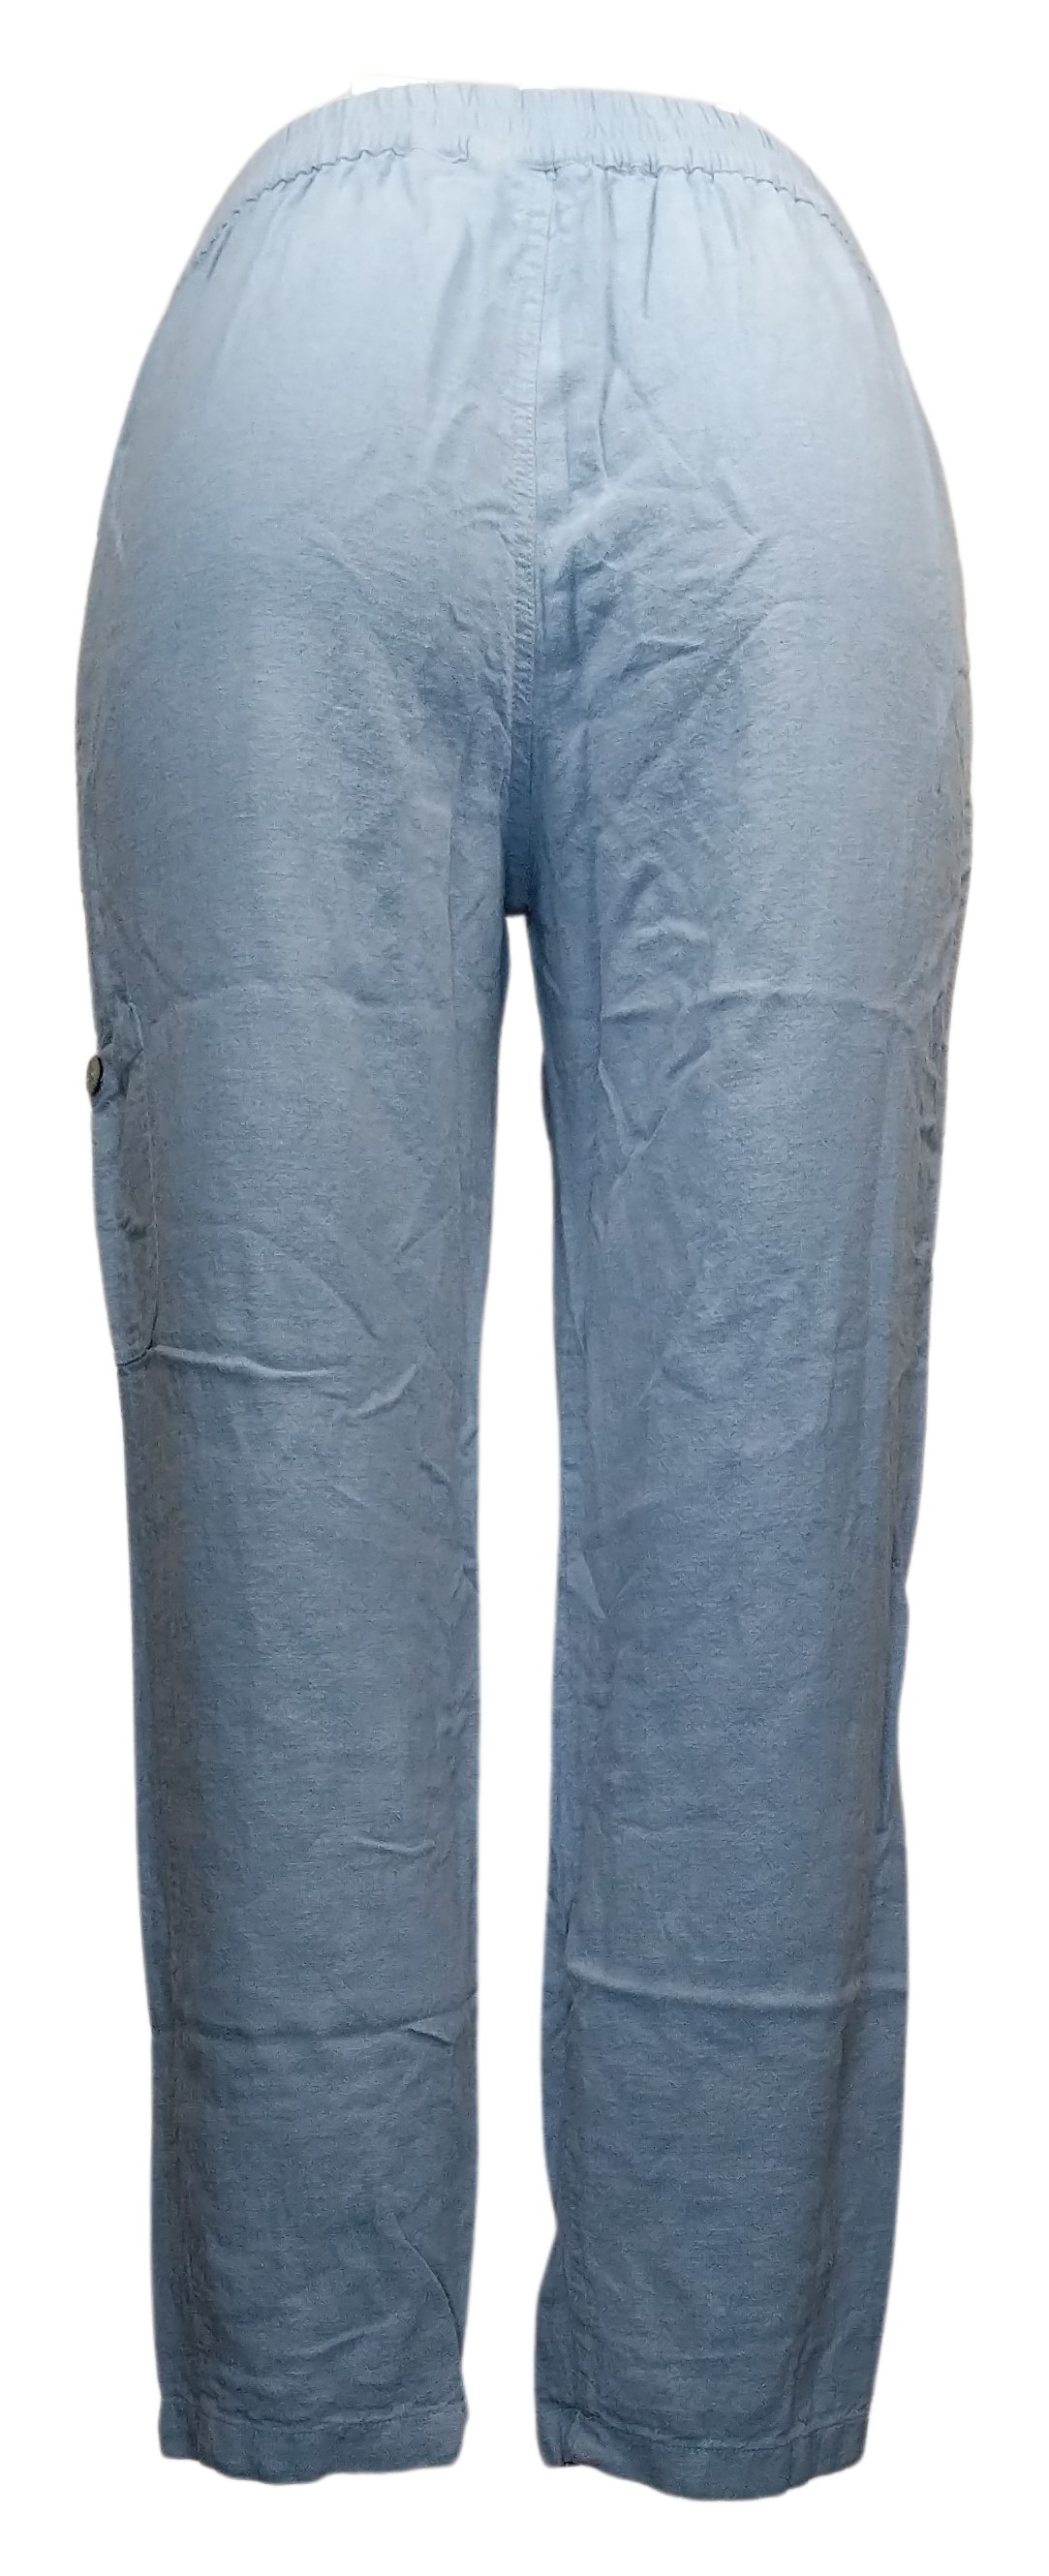 Susan Graver Tall Pure Easy Linen Utility Crop Pant Women's Pants Sz S Blue